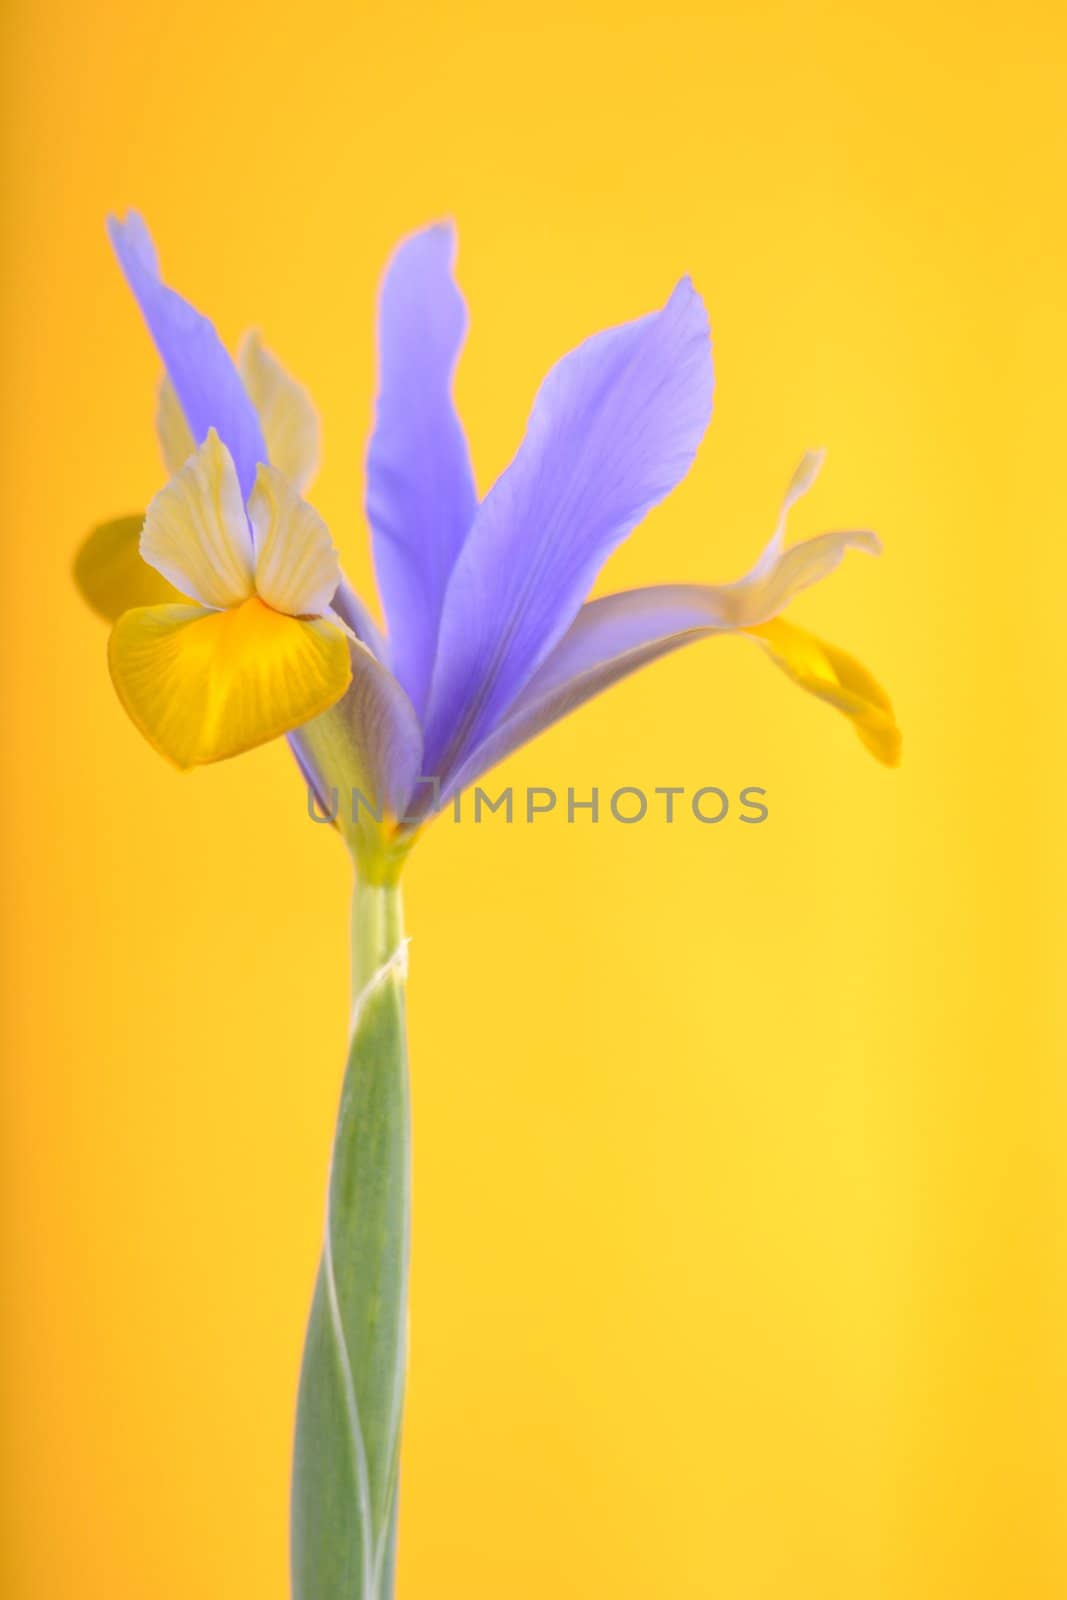 iris flower by arturbudzowski